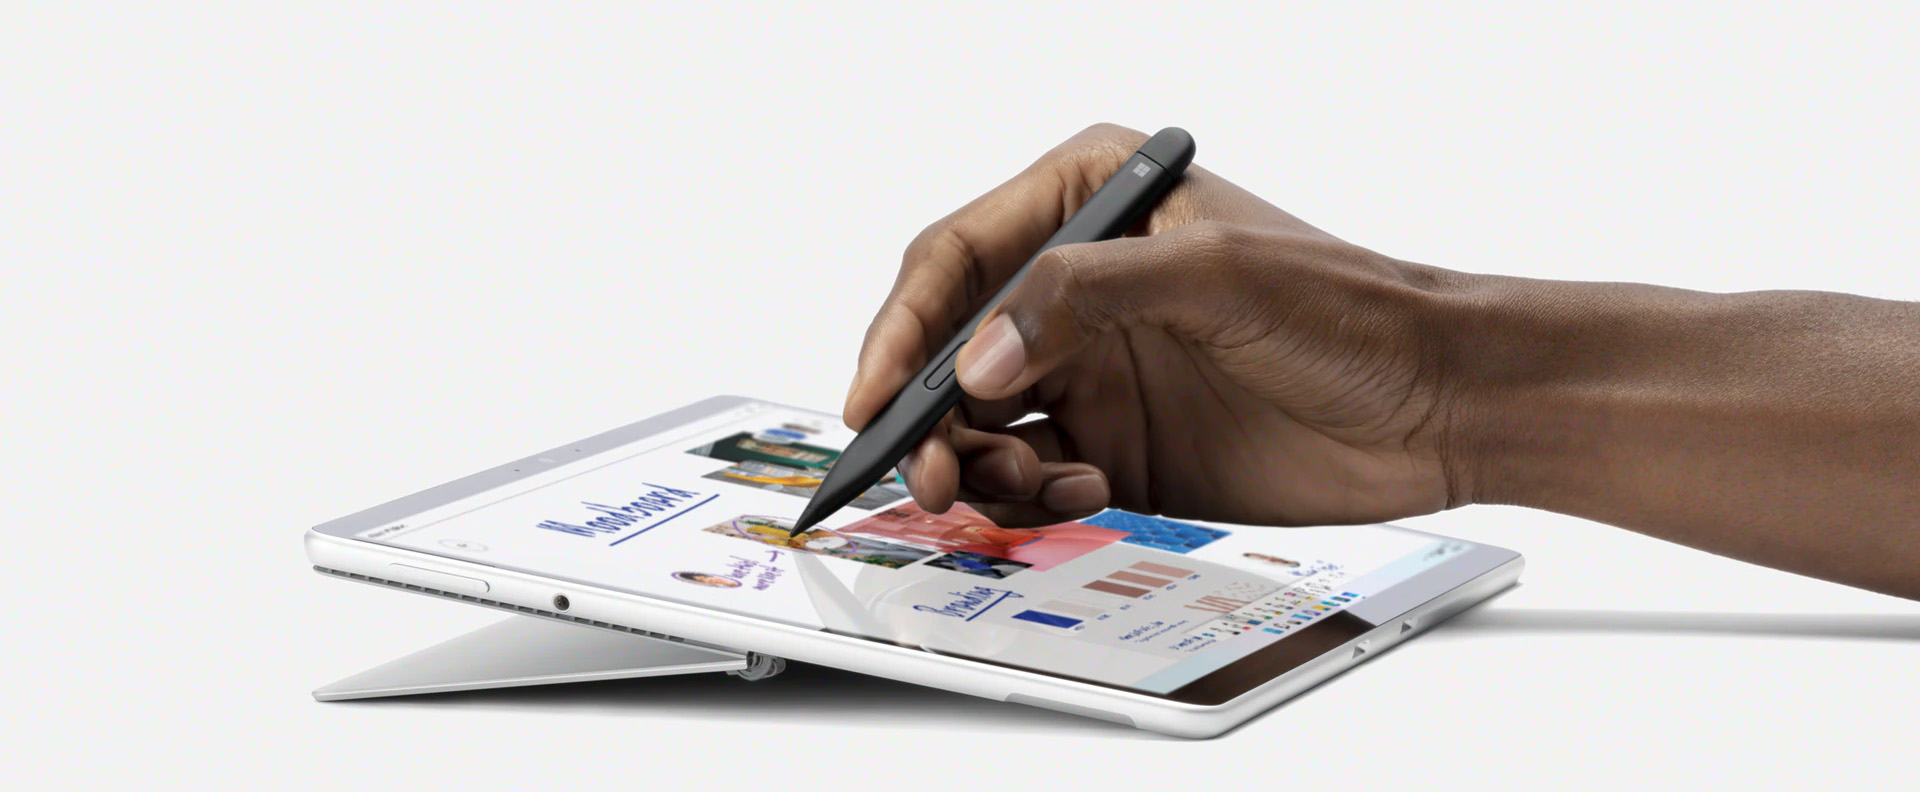 Surface Slim Pen 2 - улучшенный дизайн и функциональность